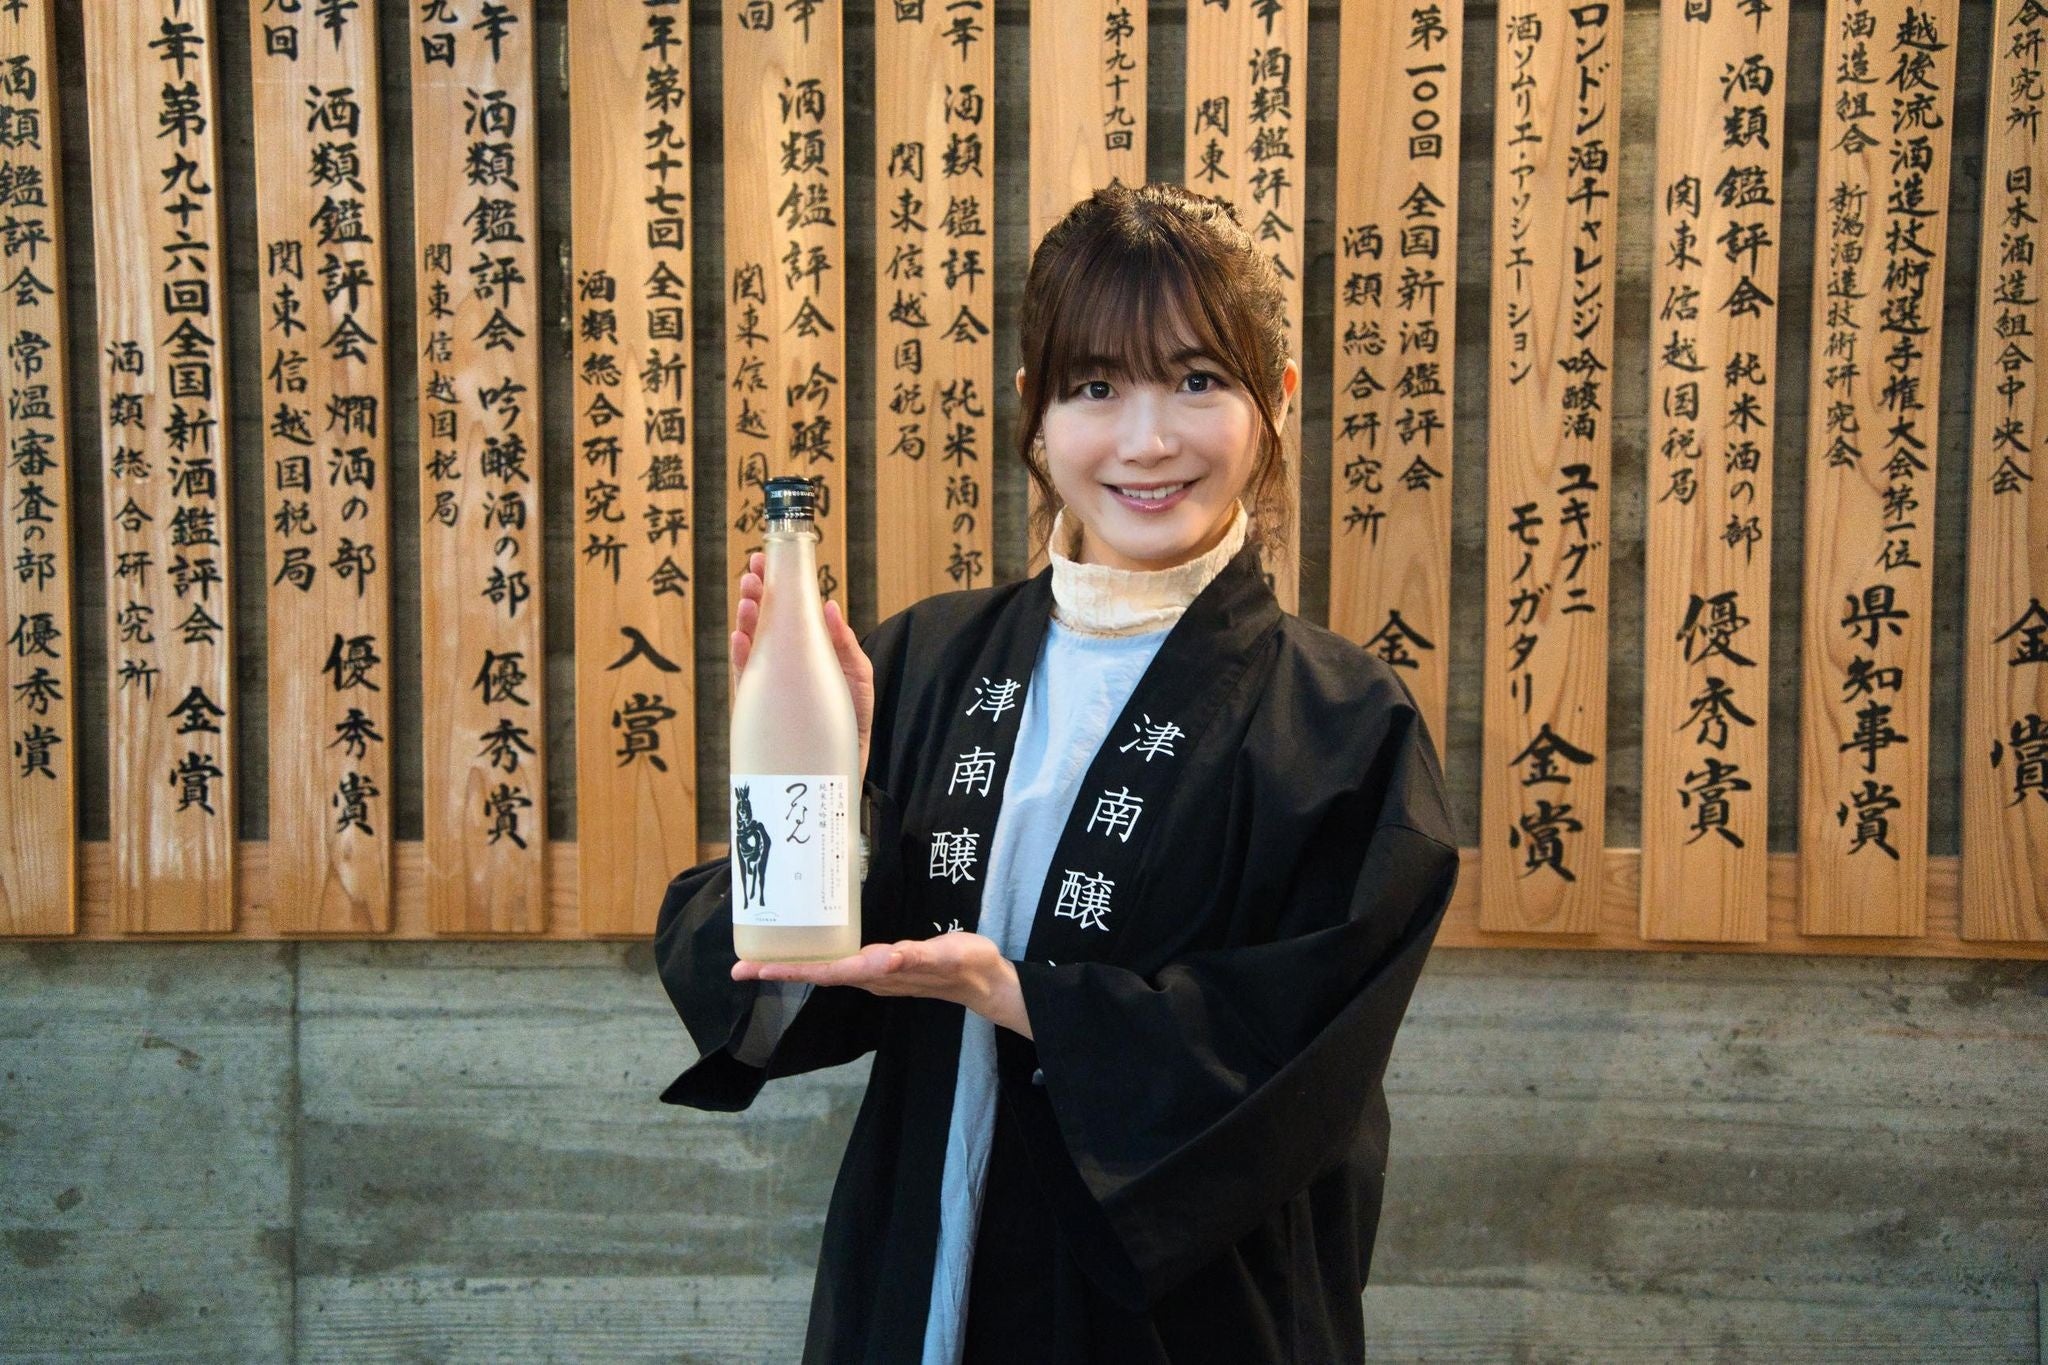 津南醸造が「酒蔵エバンジェリスト」制度を開始。初代エバンジェリストとして宇宙キャスターである榎本麗美さんを選出し招聘。日本の伝統文化と科学的知見の融合により日本酒蔵の次なる可能性を探る。